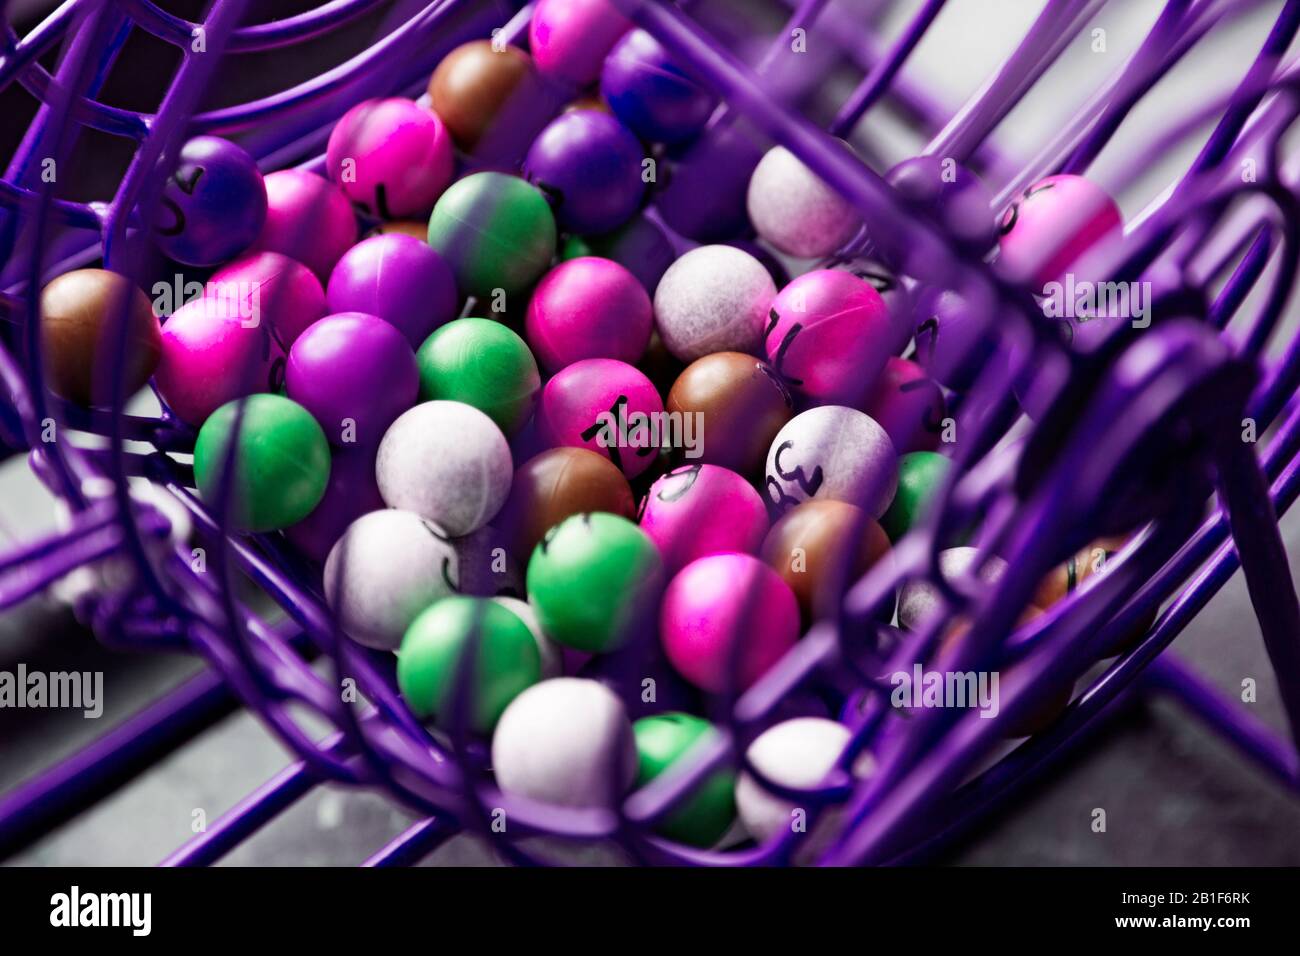 jeu de loterie violet en gros plan avec différentes boules colorées avec des nombres Banque D'Images